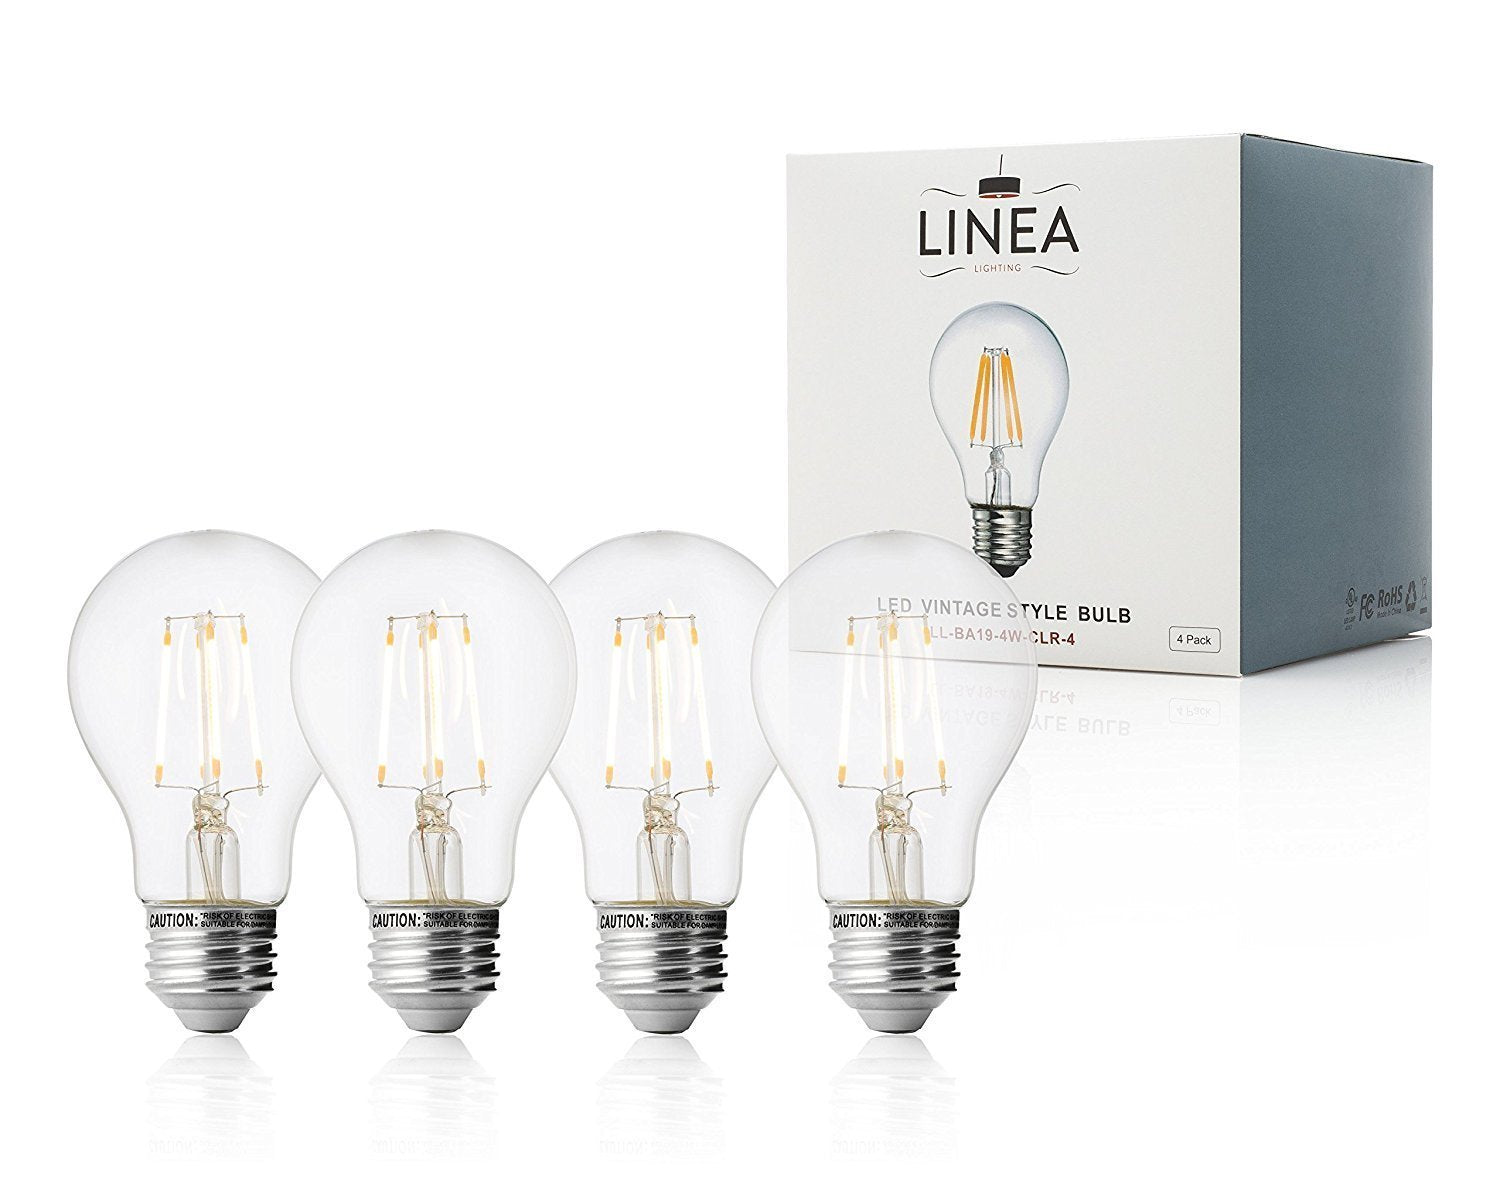 Assimilatie Vertrappen ballet 4 Watt A19 LED Light Bulb | Linea Lighting | Modern and Affordable  Residential Lighting